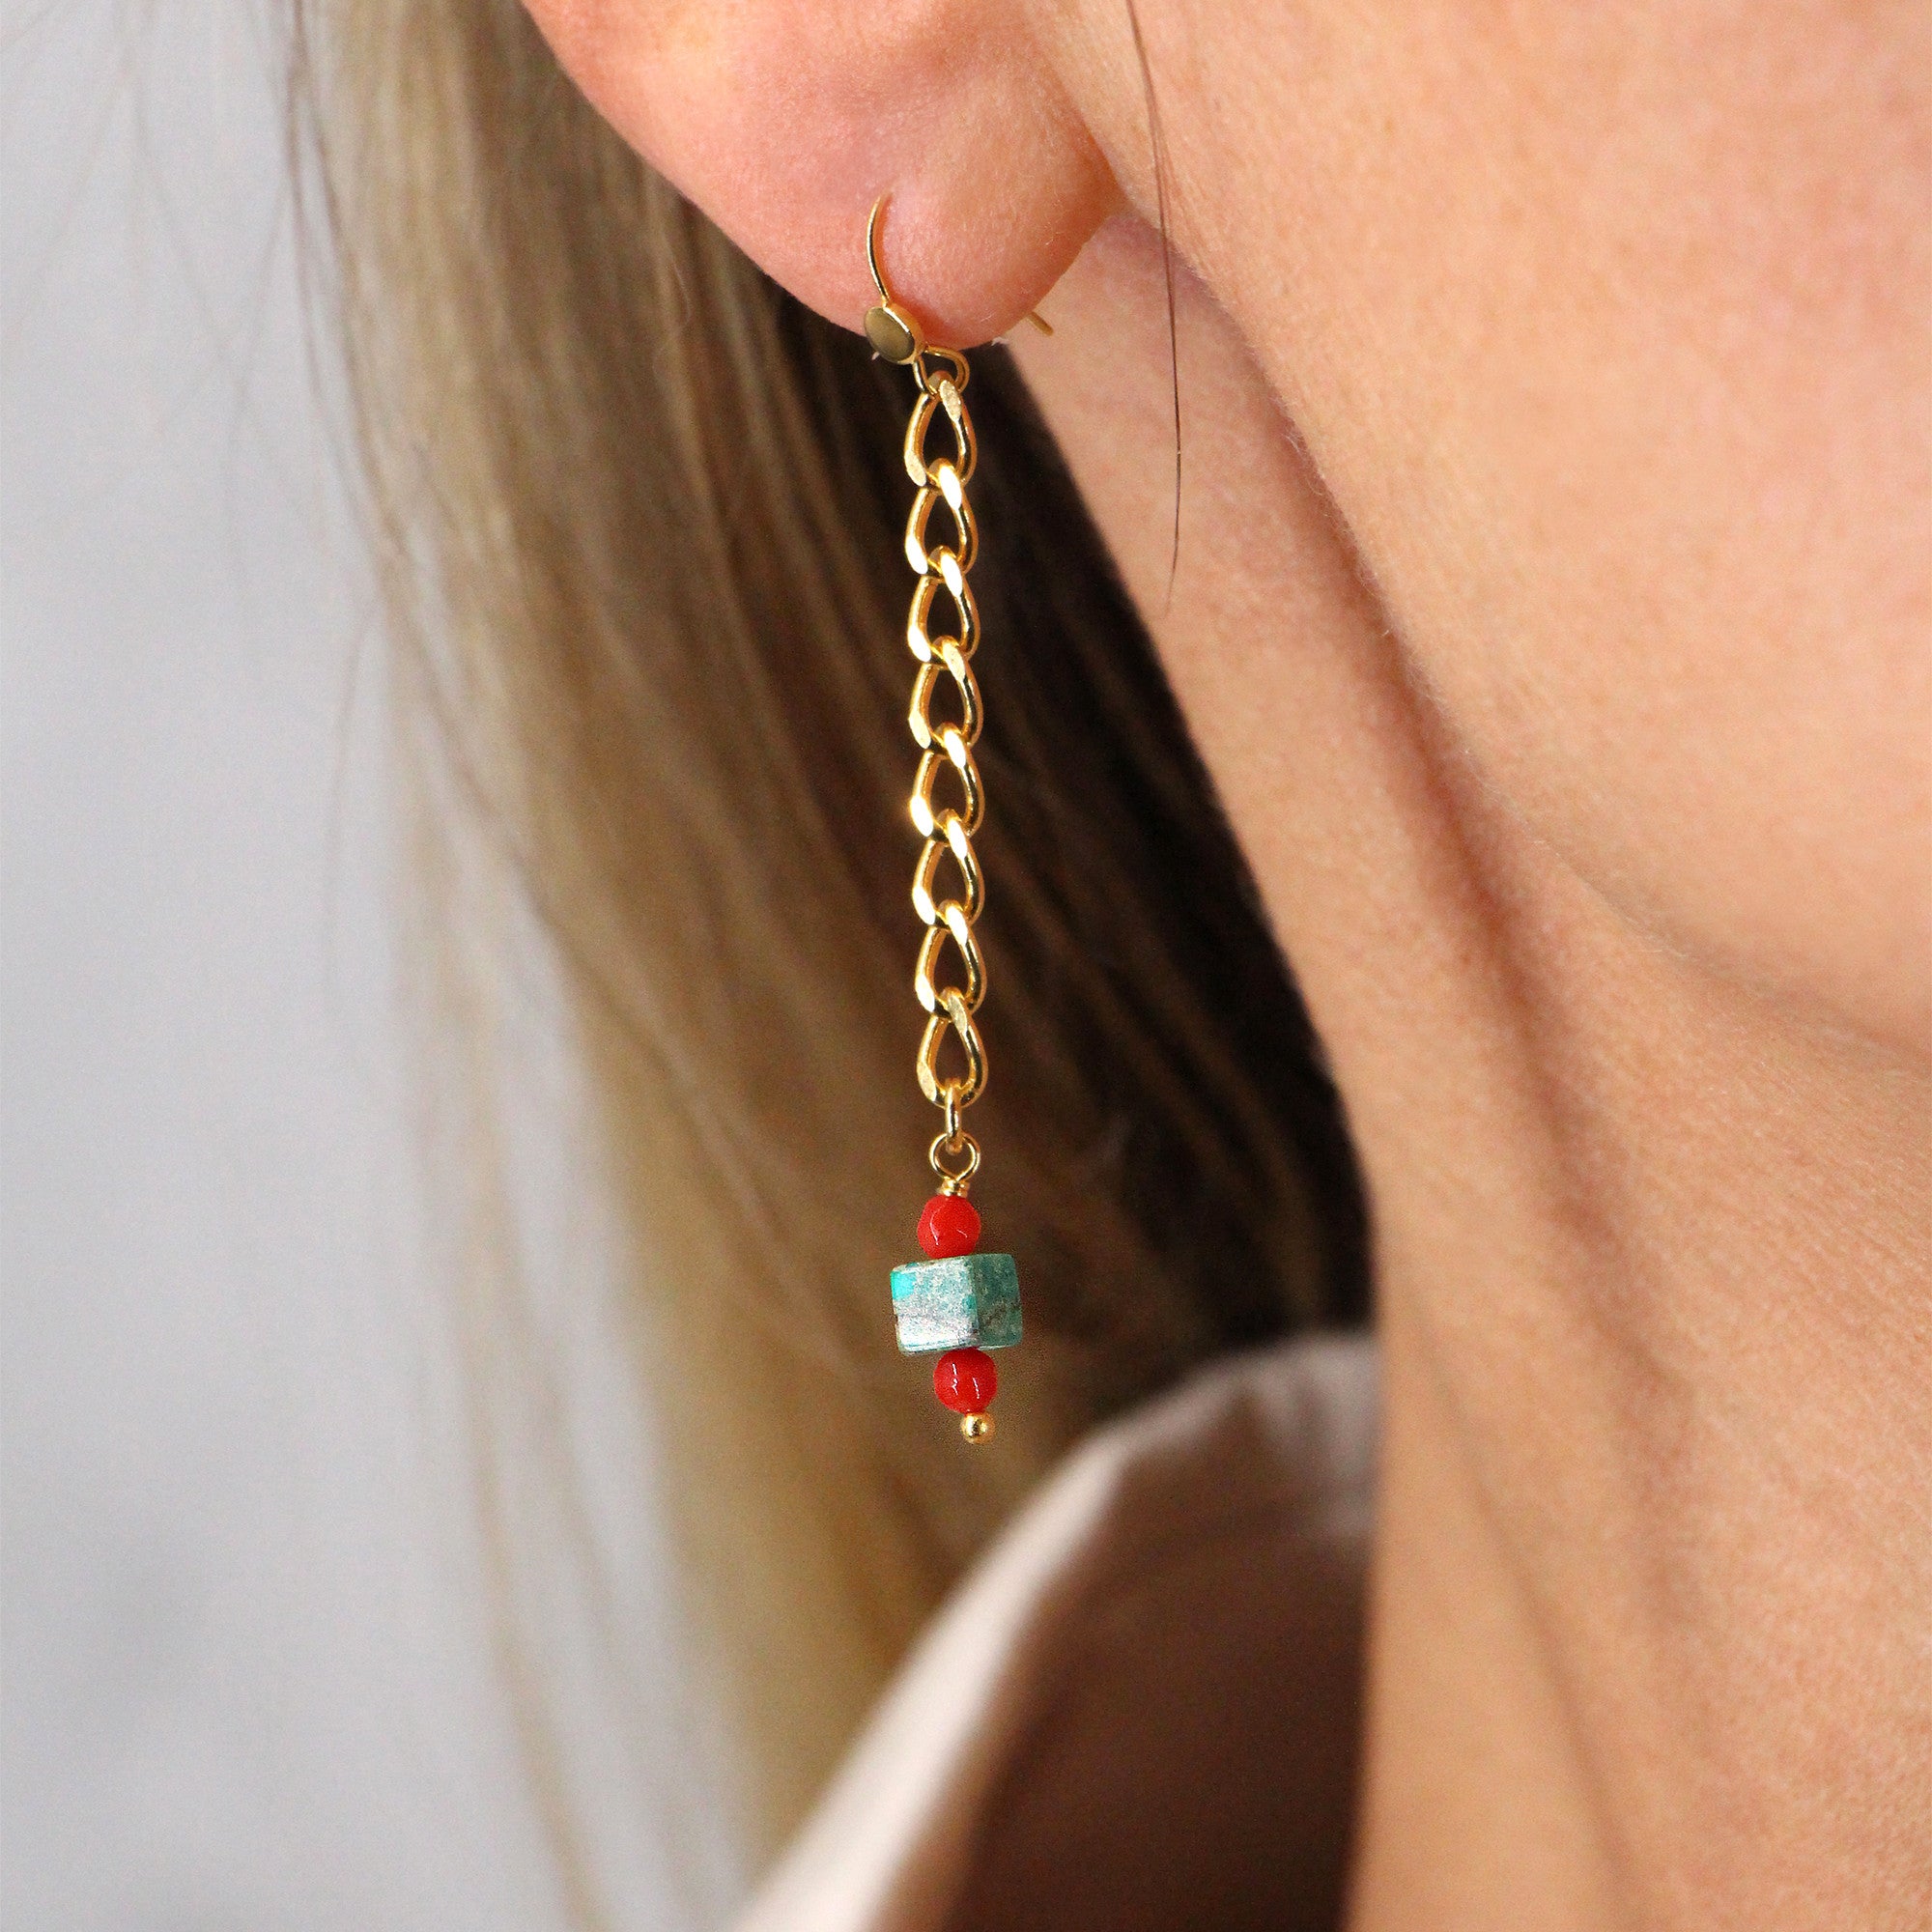 Marlot earrings